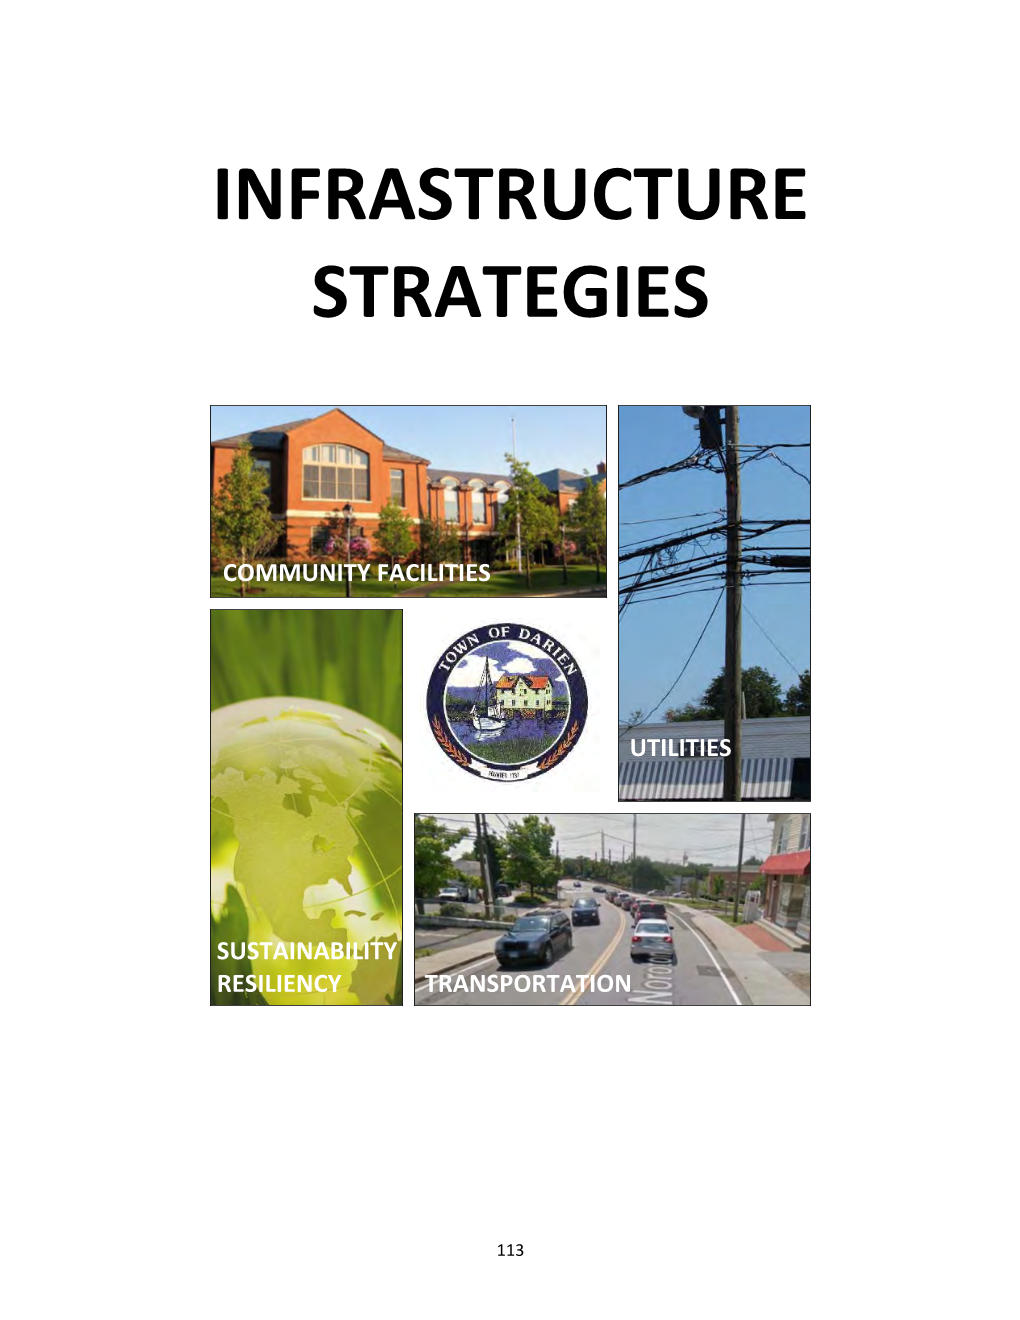 Infrastructure Strategies